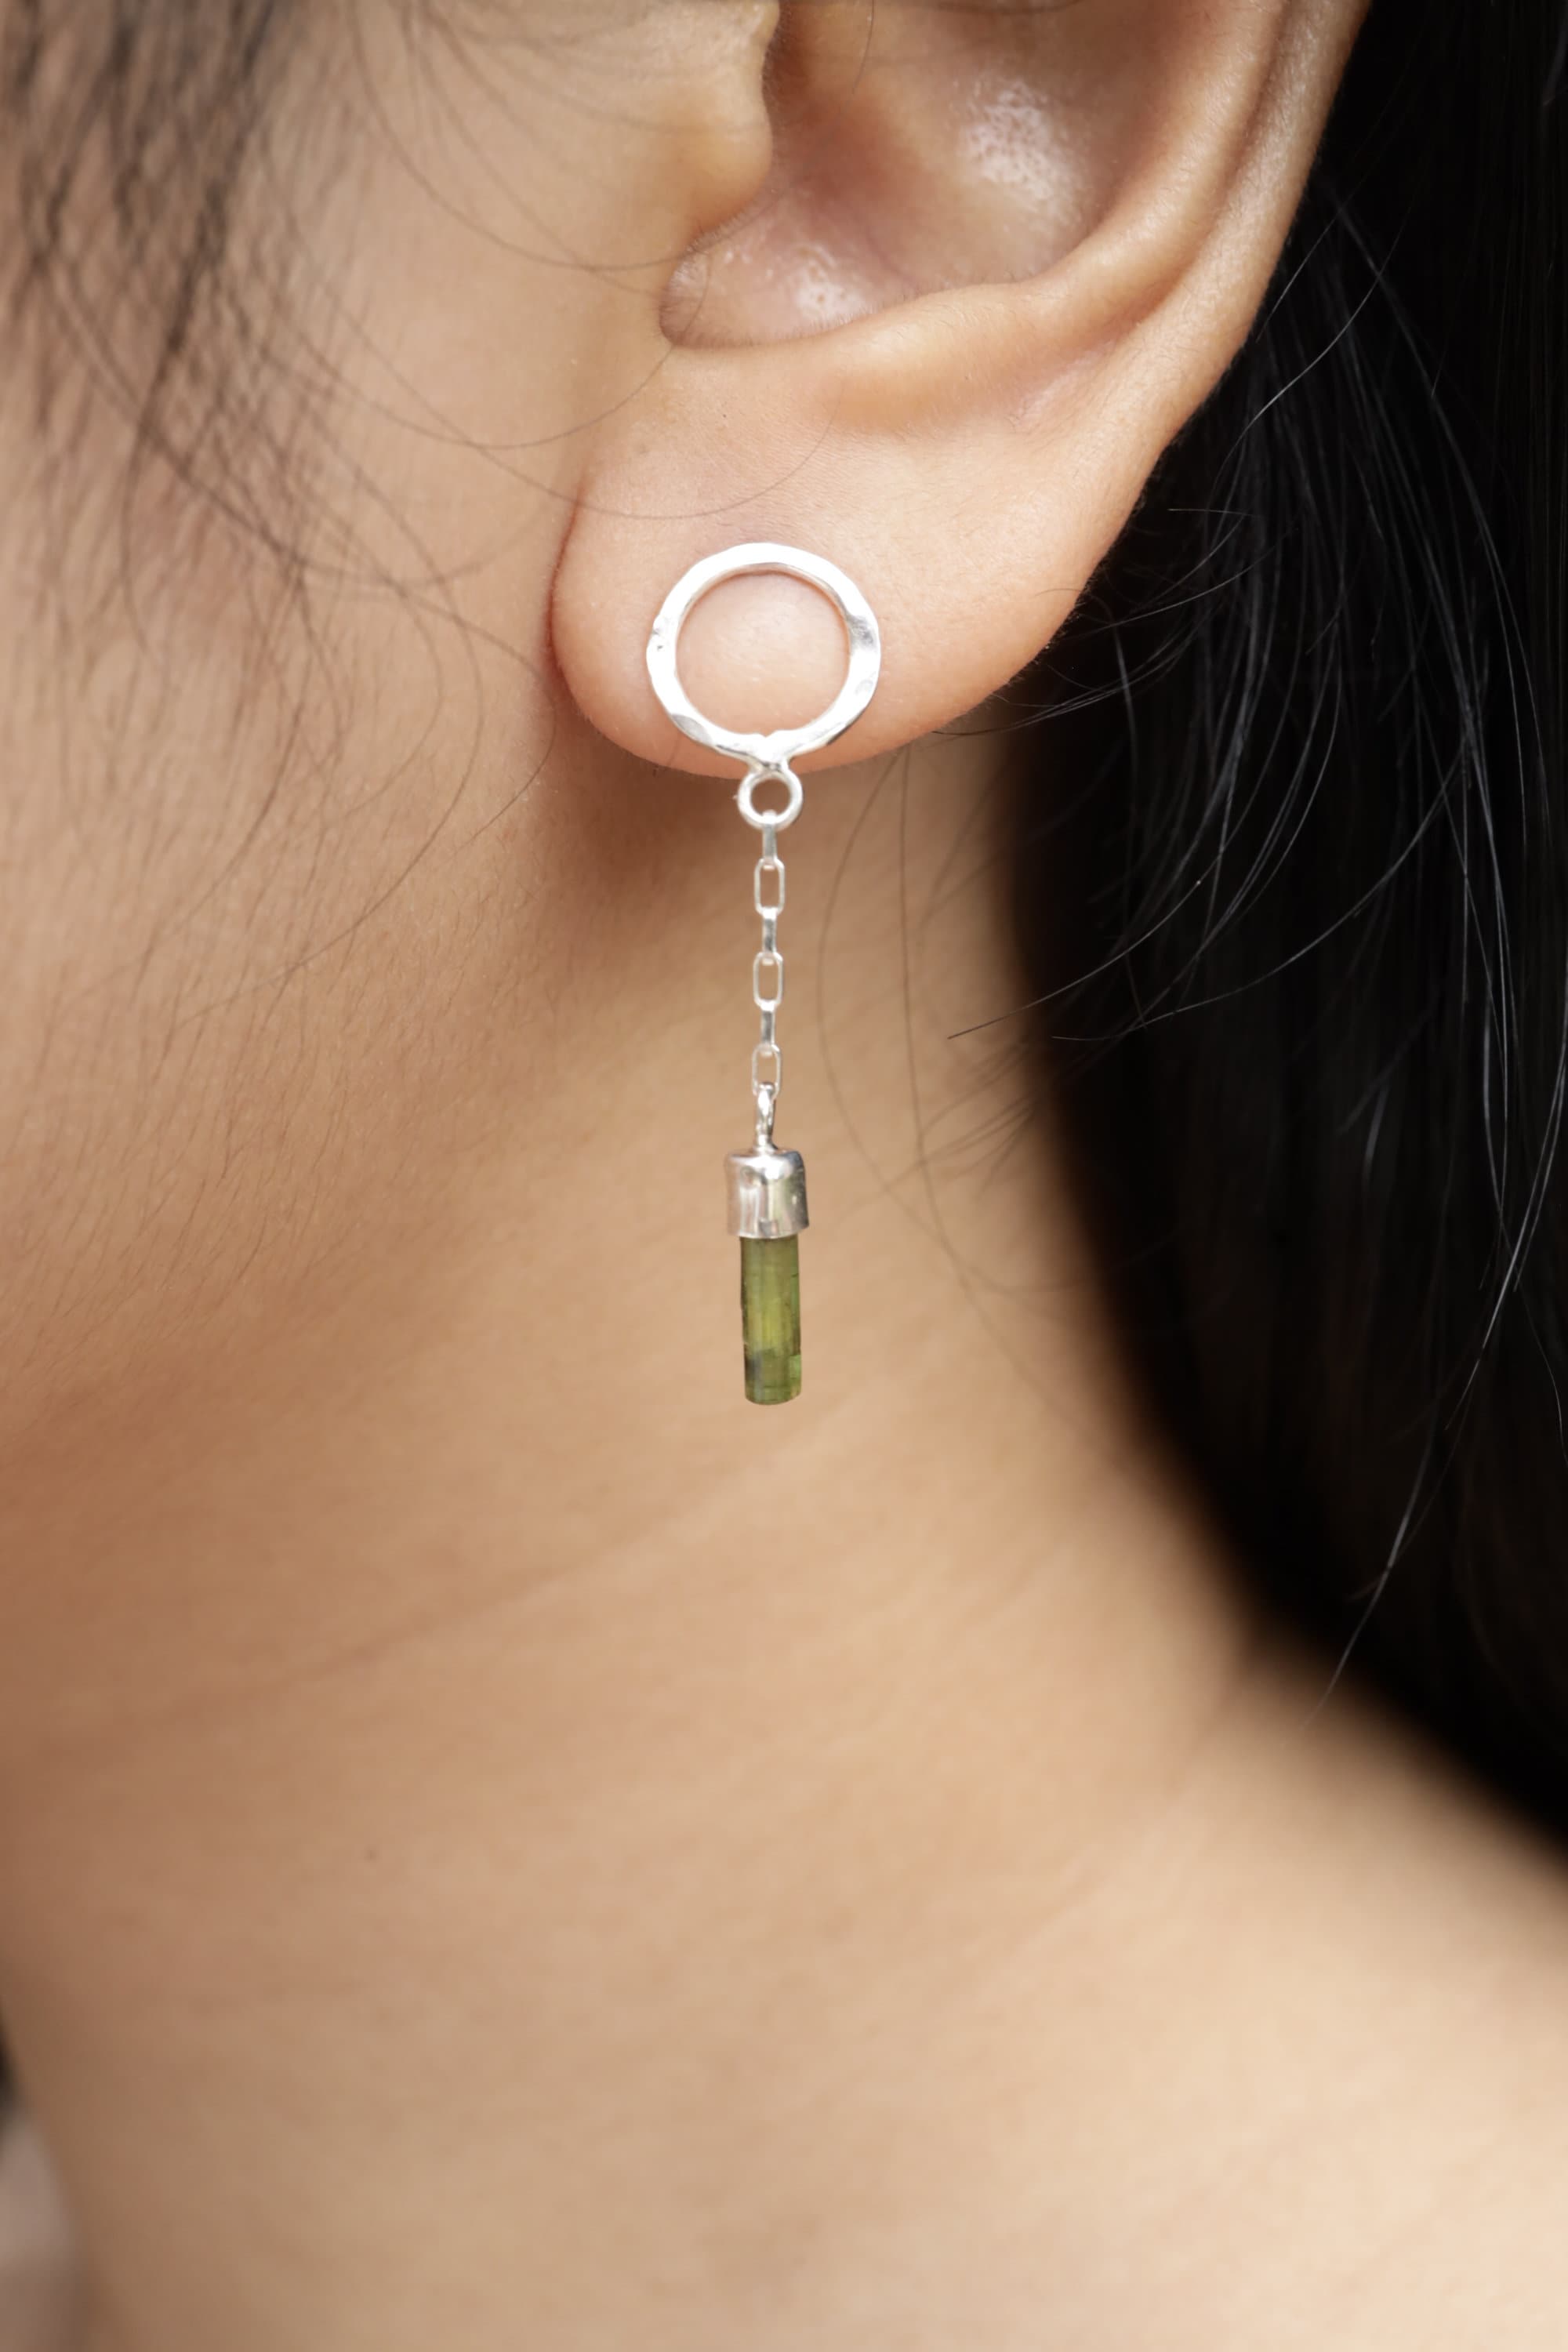 Pair of Raindrop Green Tourmaline Chain Earrings Stud Earrings - 925 Sterling Silver - Stud Earring - Hammered & Shiny Finish